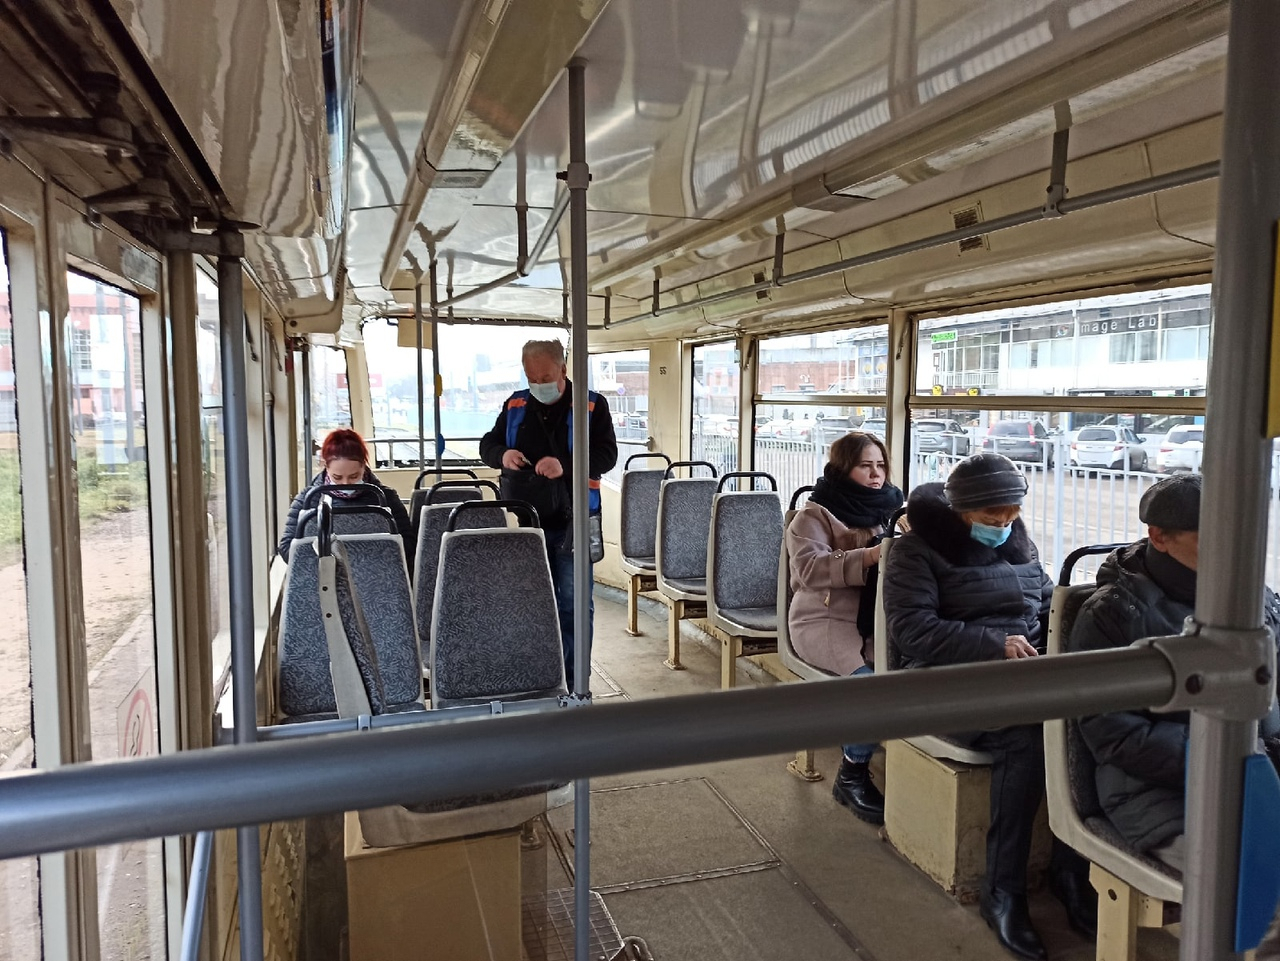 В Ярославле изменили правила посадки в общественный транспорт: комментарий мэрии